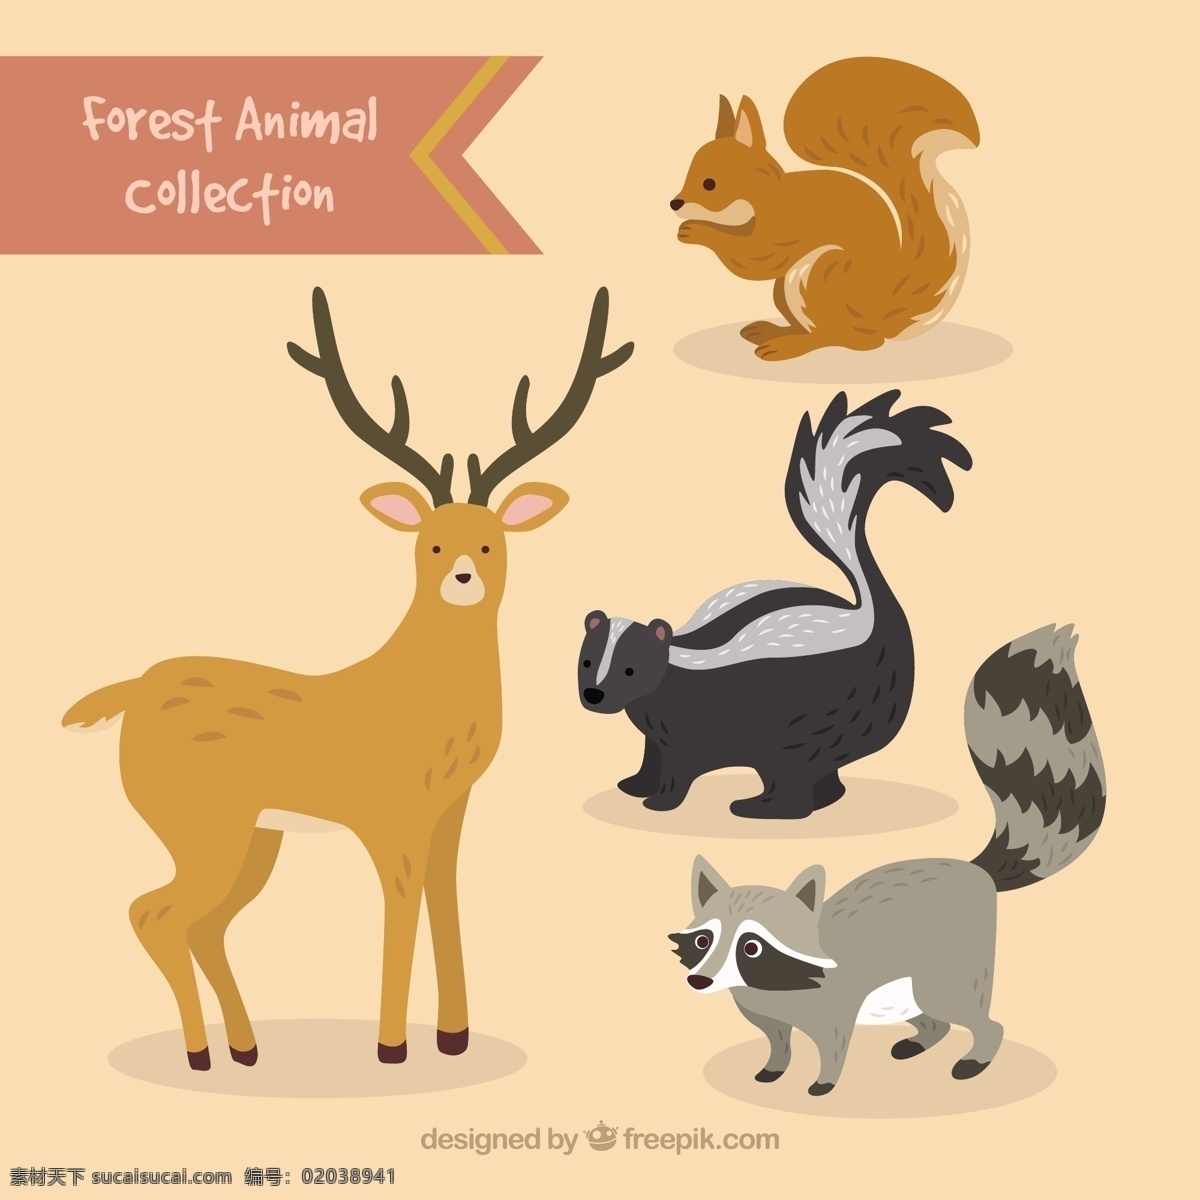 手工 绘制 可爱 森林 动物 集合 一方面 自然 手绘 绘画 驯鹿 可爱的松鼠 可爱的动物 画野 设置好 草图 野生动物 粗略 浣熊 黄色